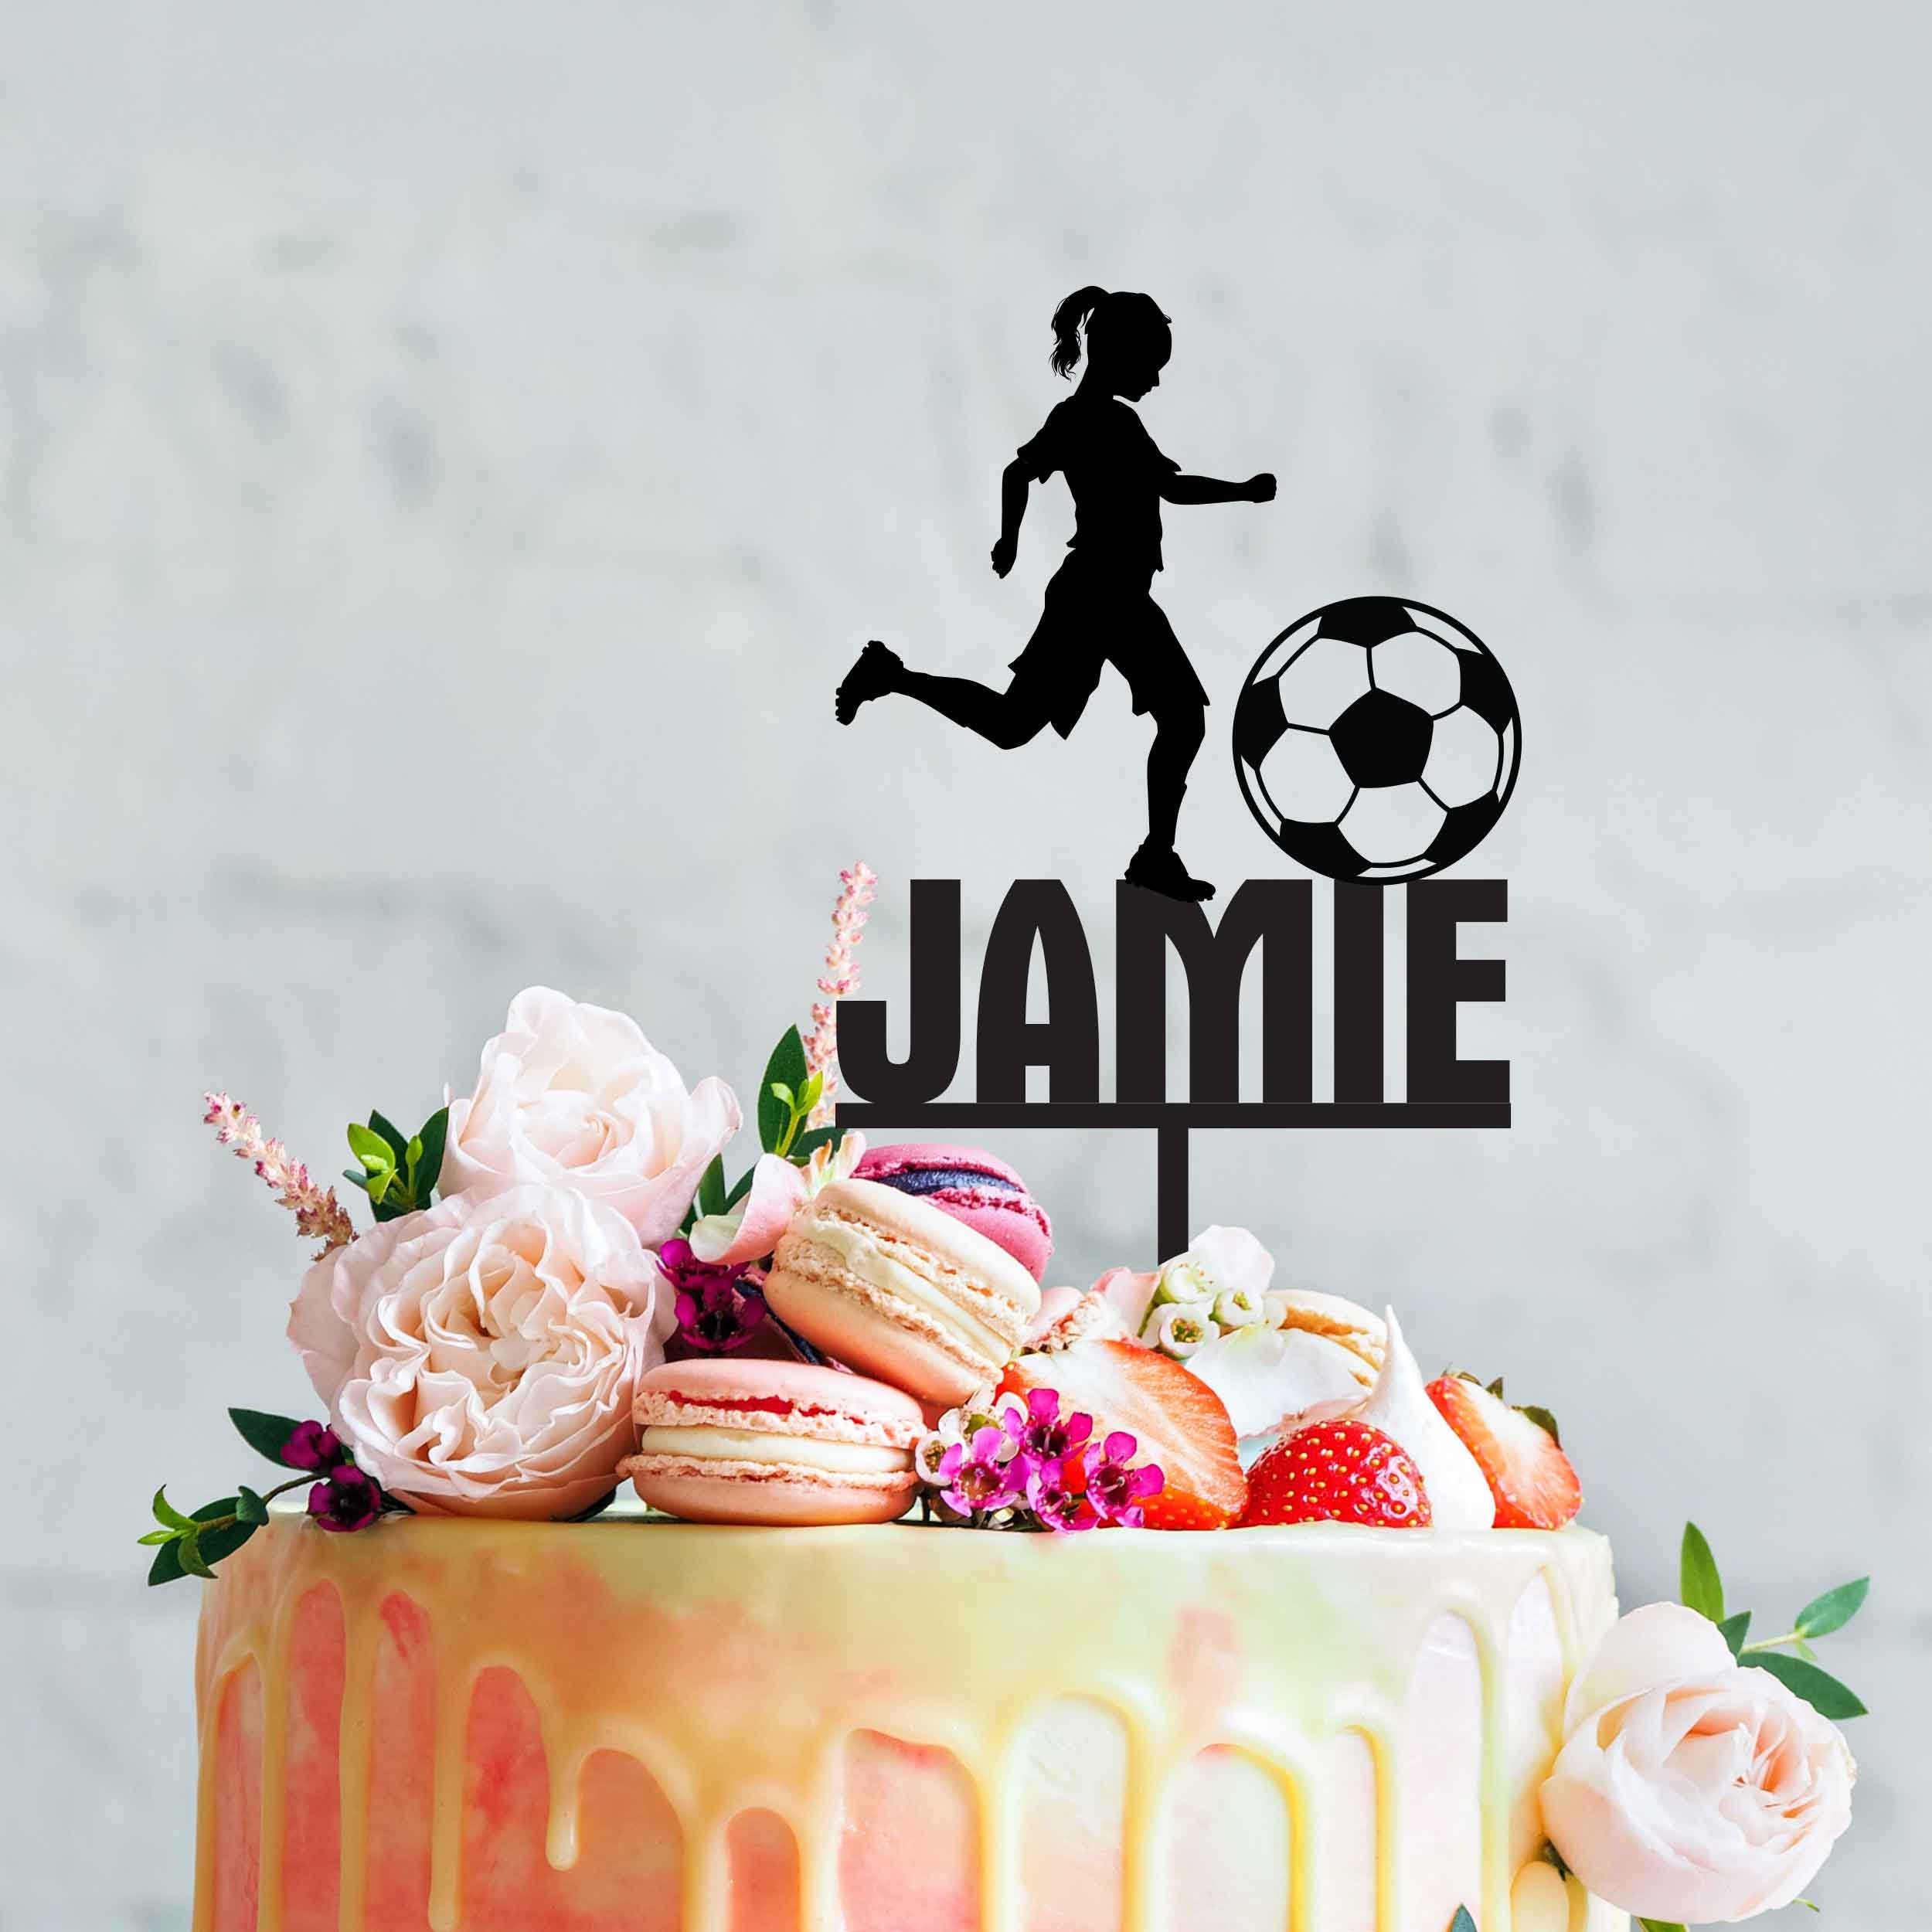 Juego de 2 adornos comestibles para tartas con diseño de balón de fútbol y  decoración para tartas de cumpleaños infantiles